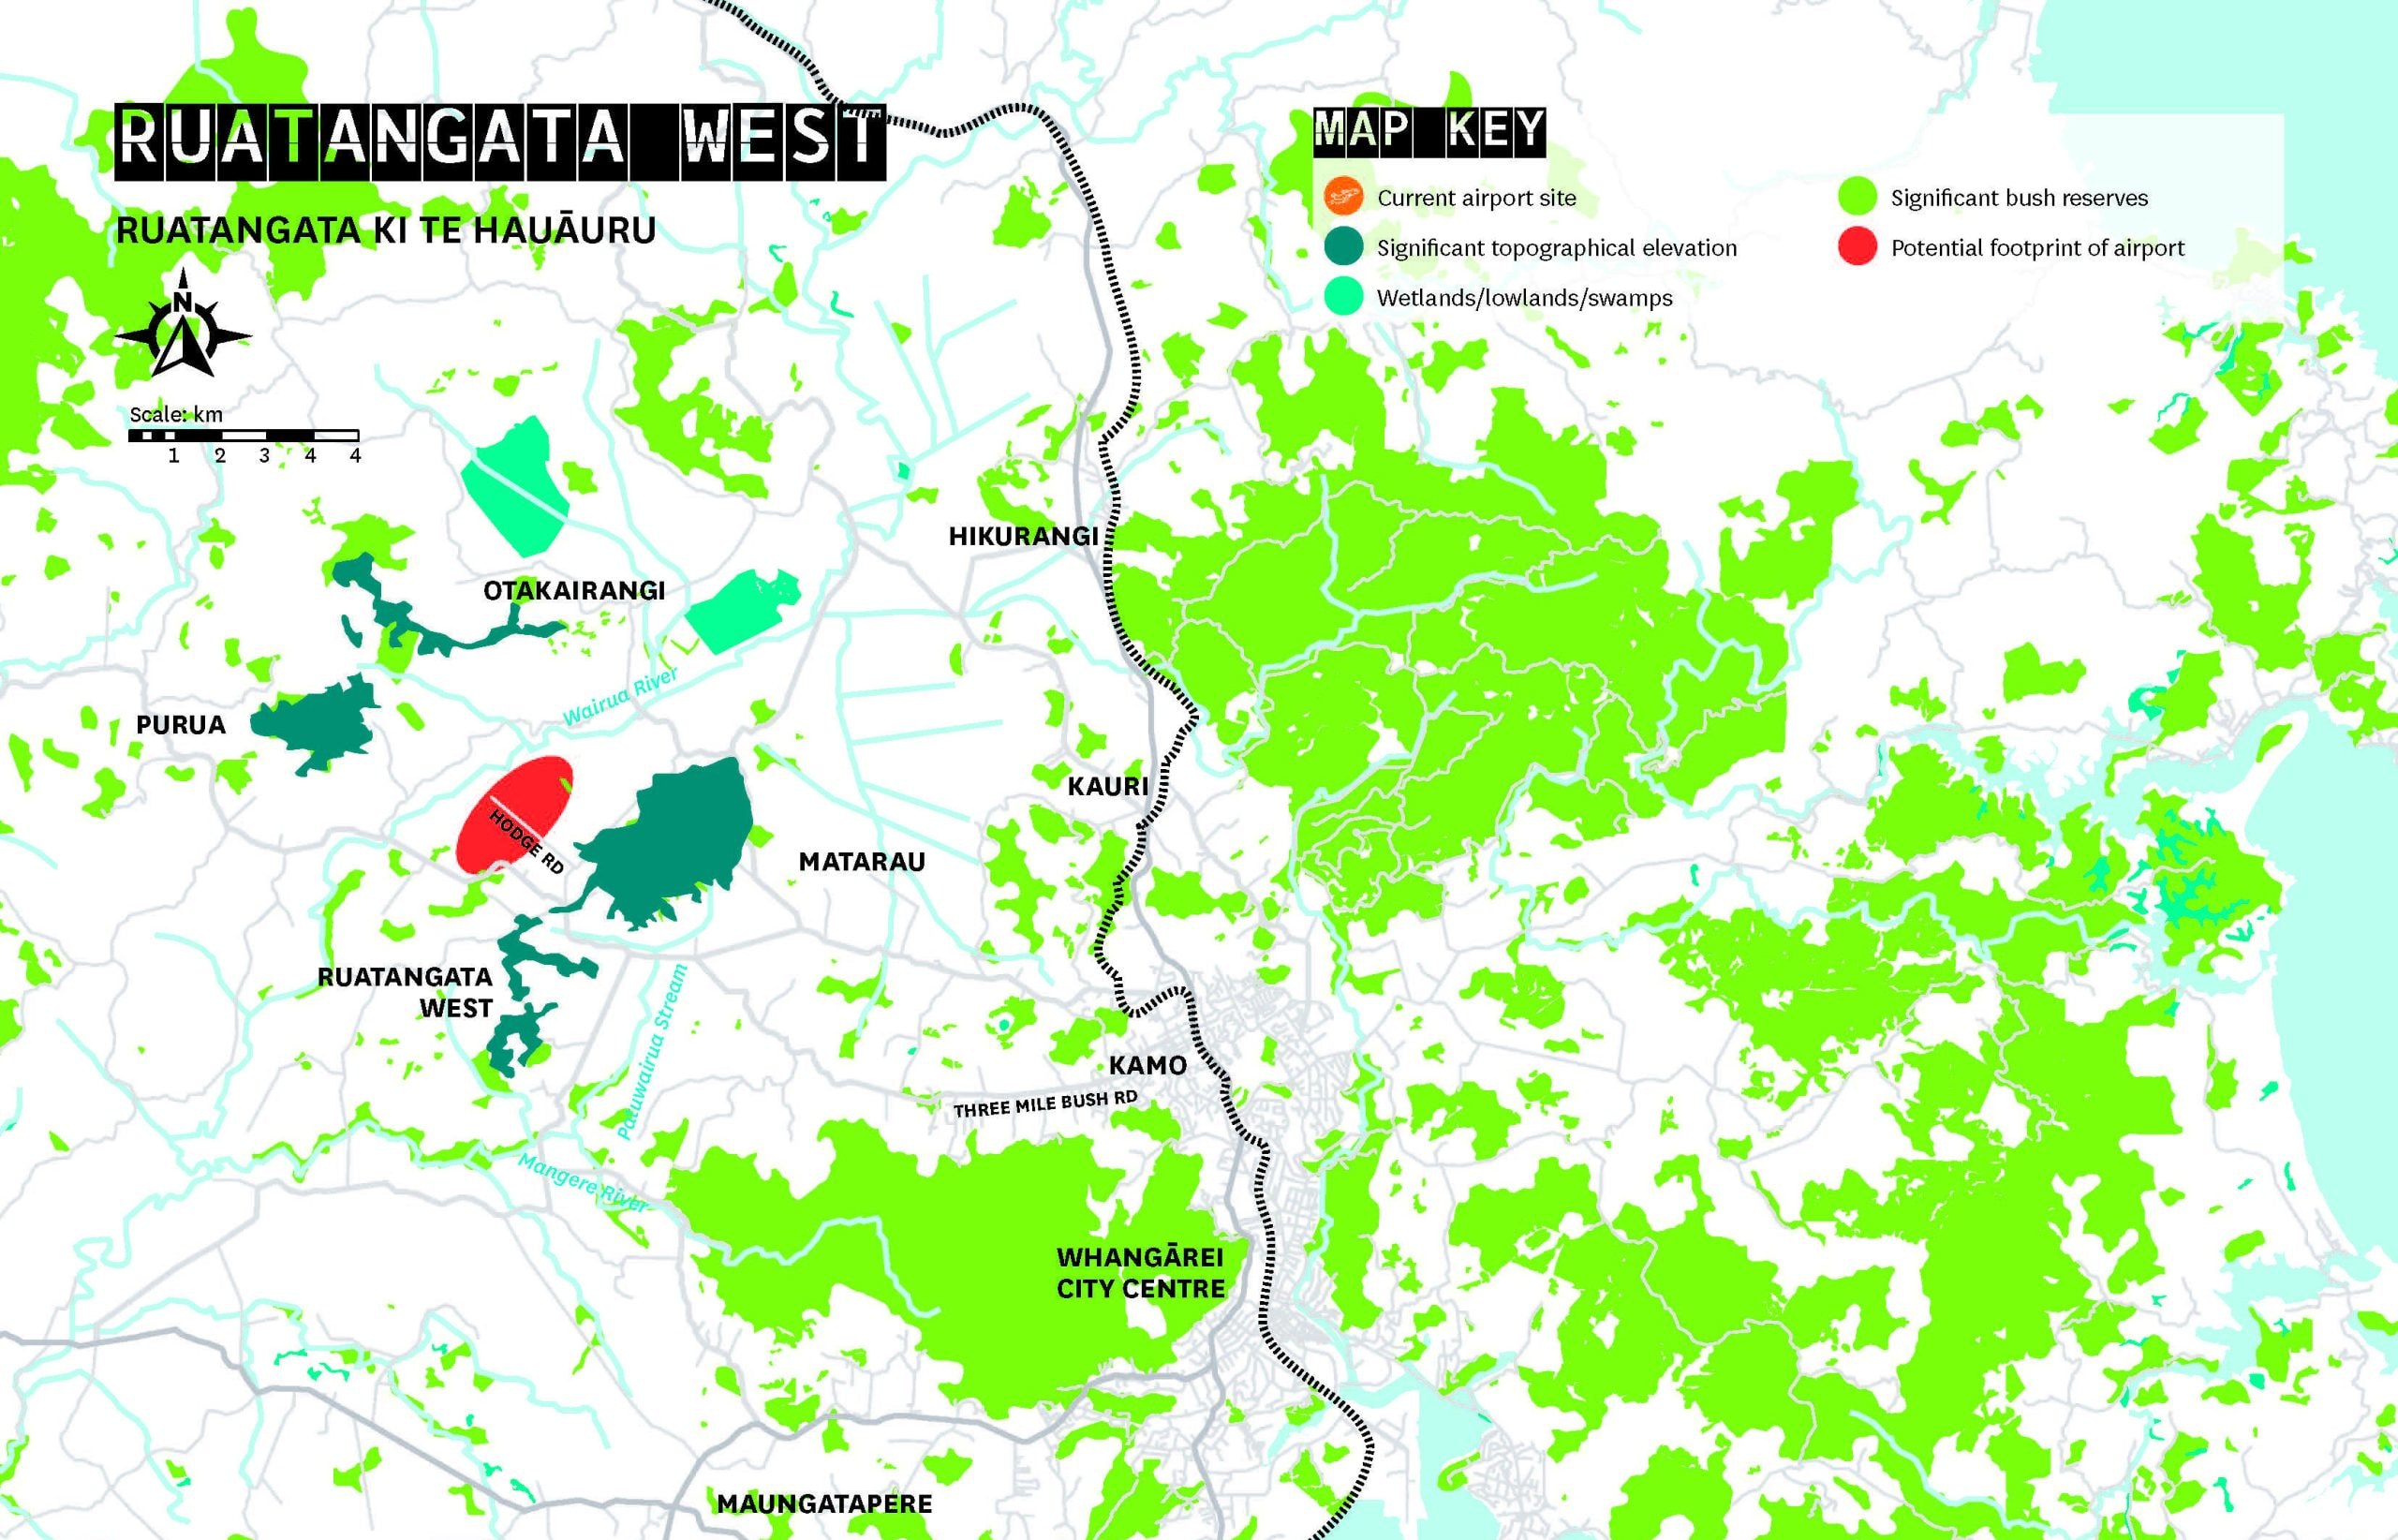 Ruatangata west airport location map